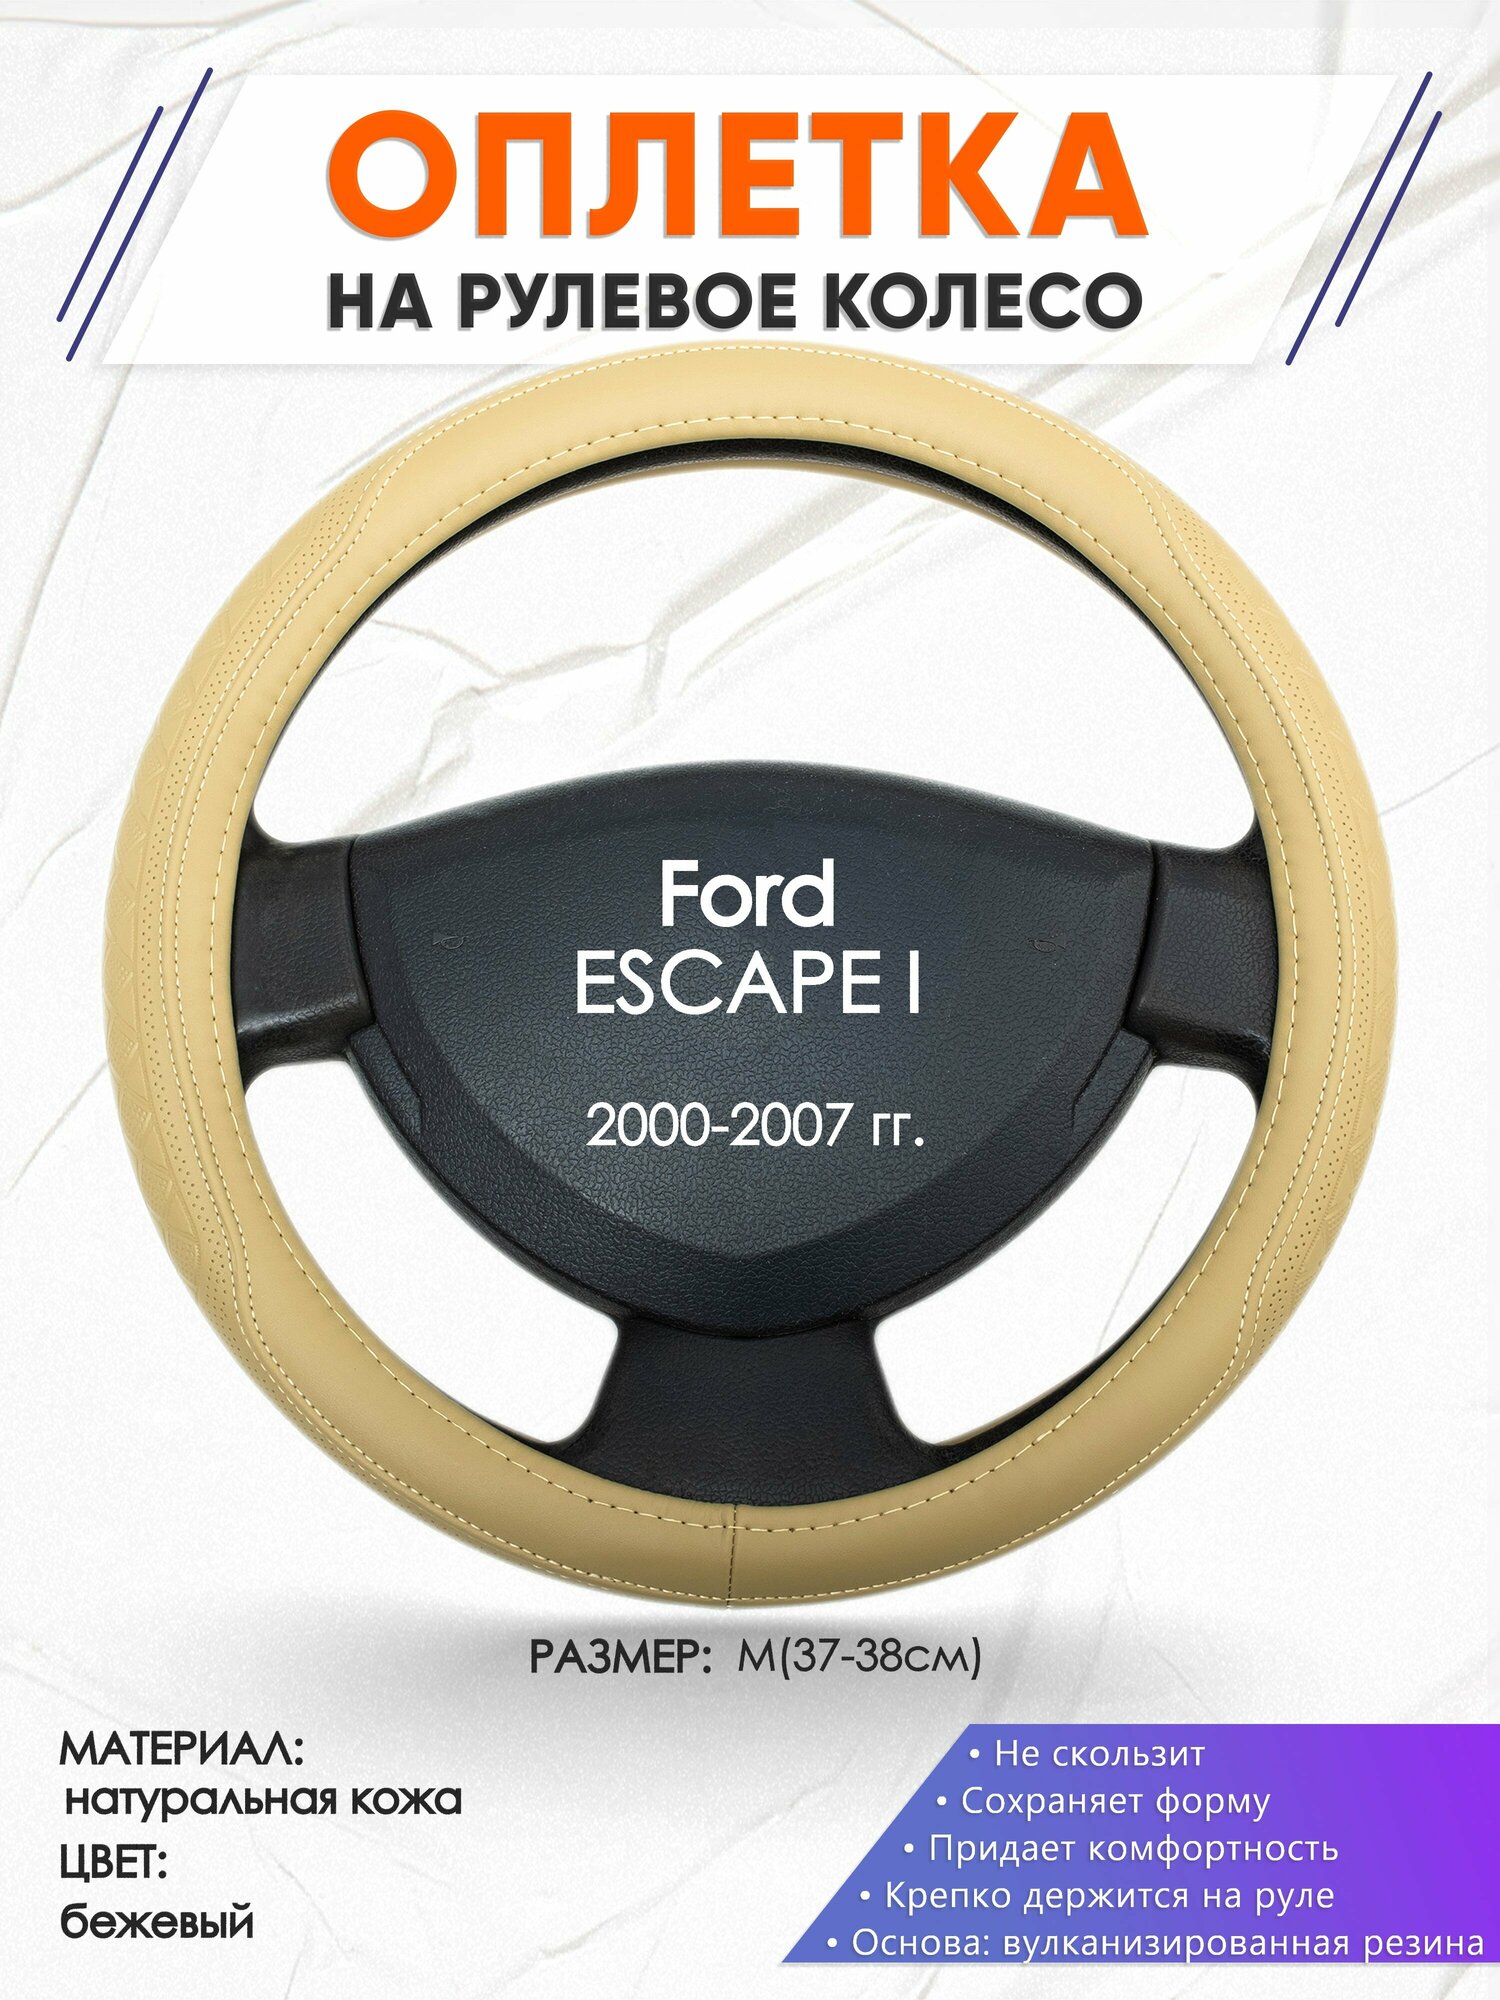 Оплетка наруль для Ford ESCAPE I(Форд Эскейп 1) 2000-2007 годов выпуска, размер M(37-38см), Натуральная кожа 91